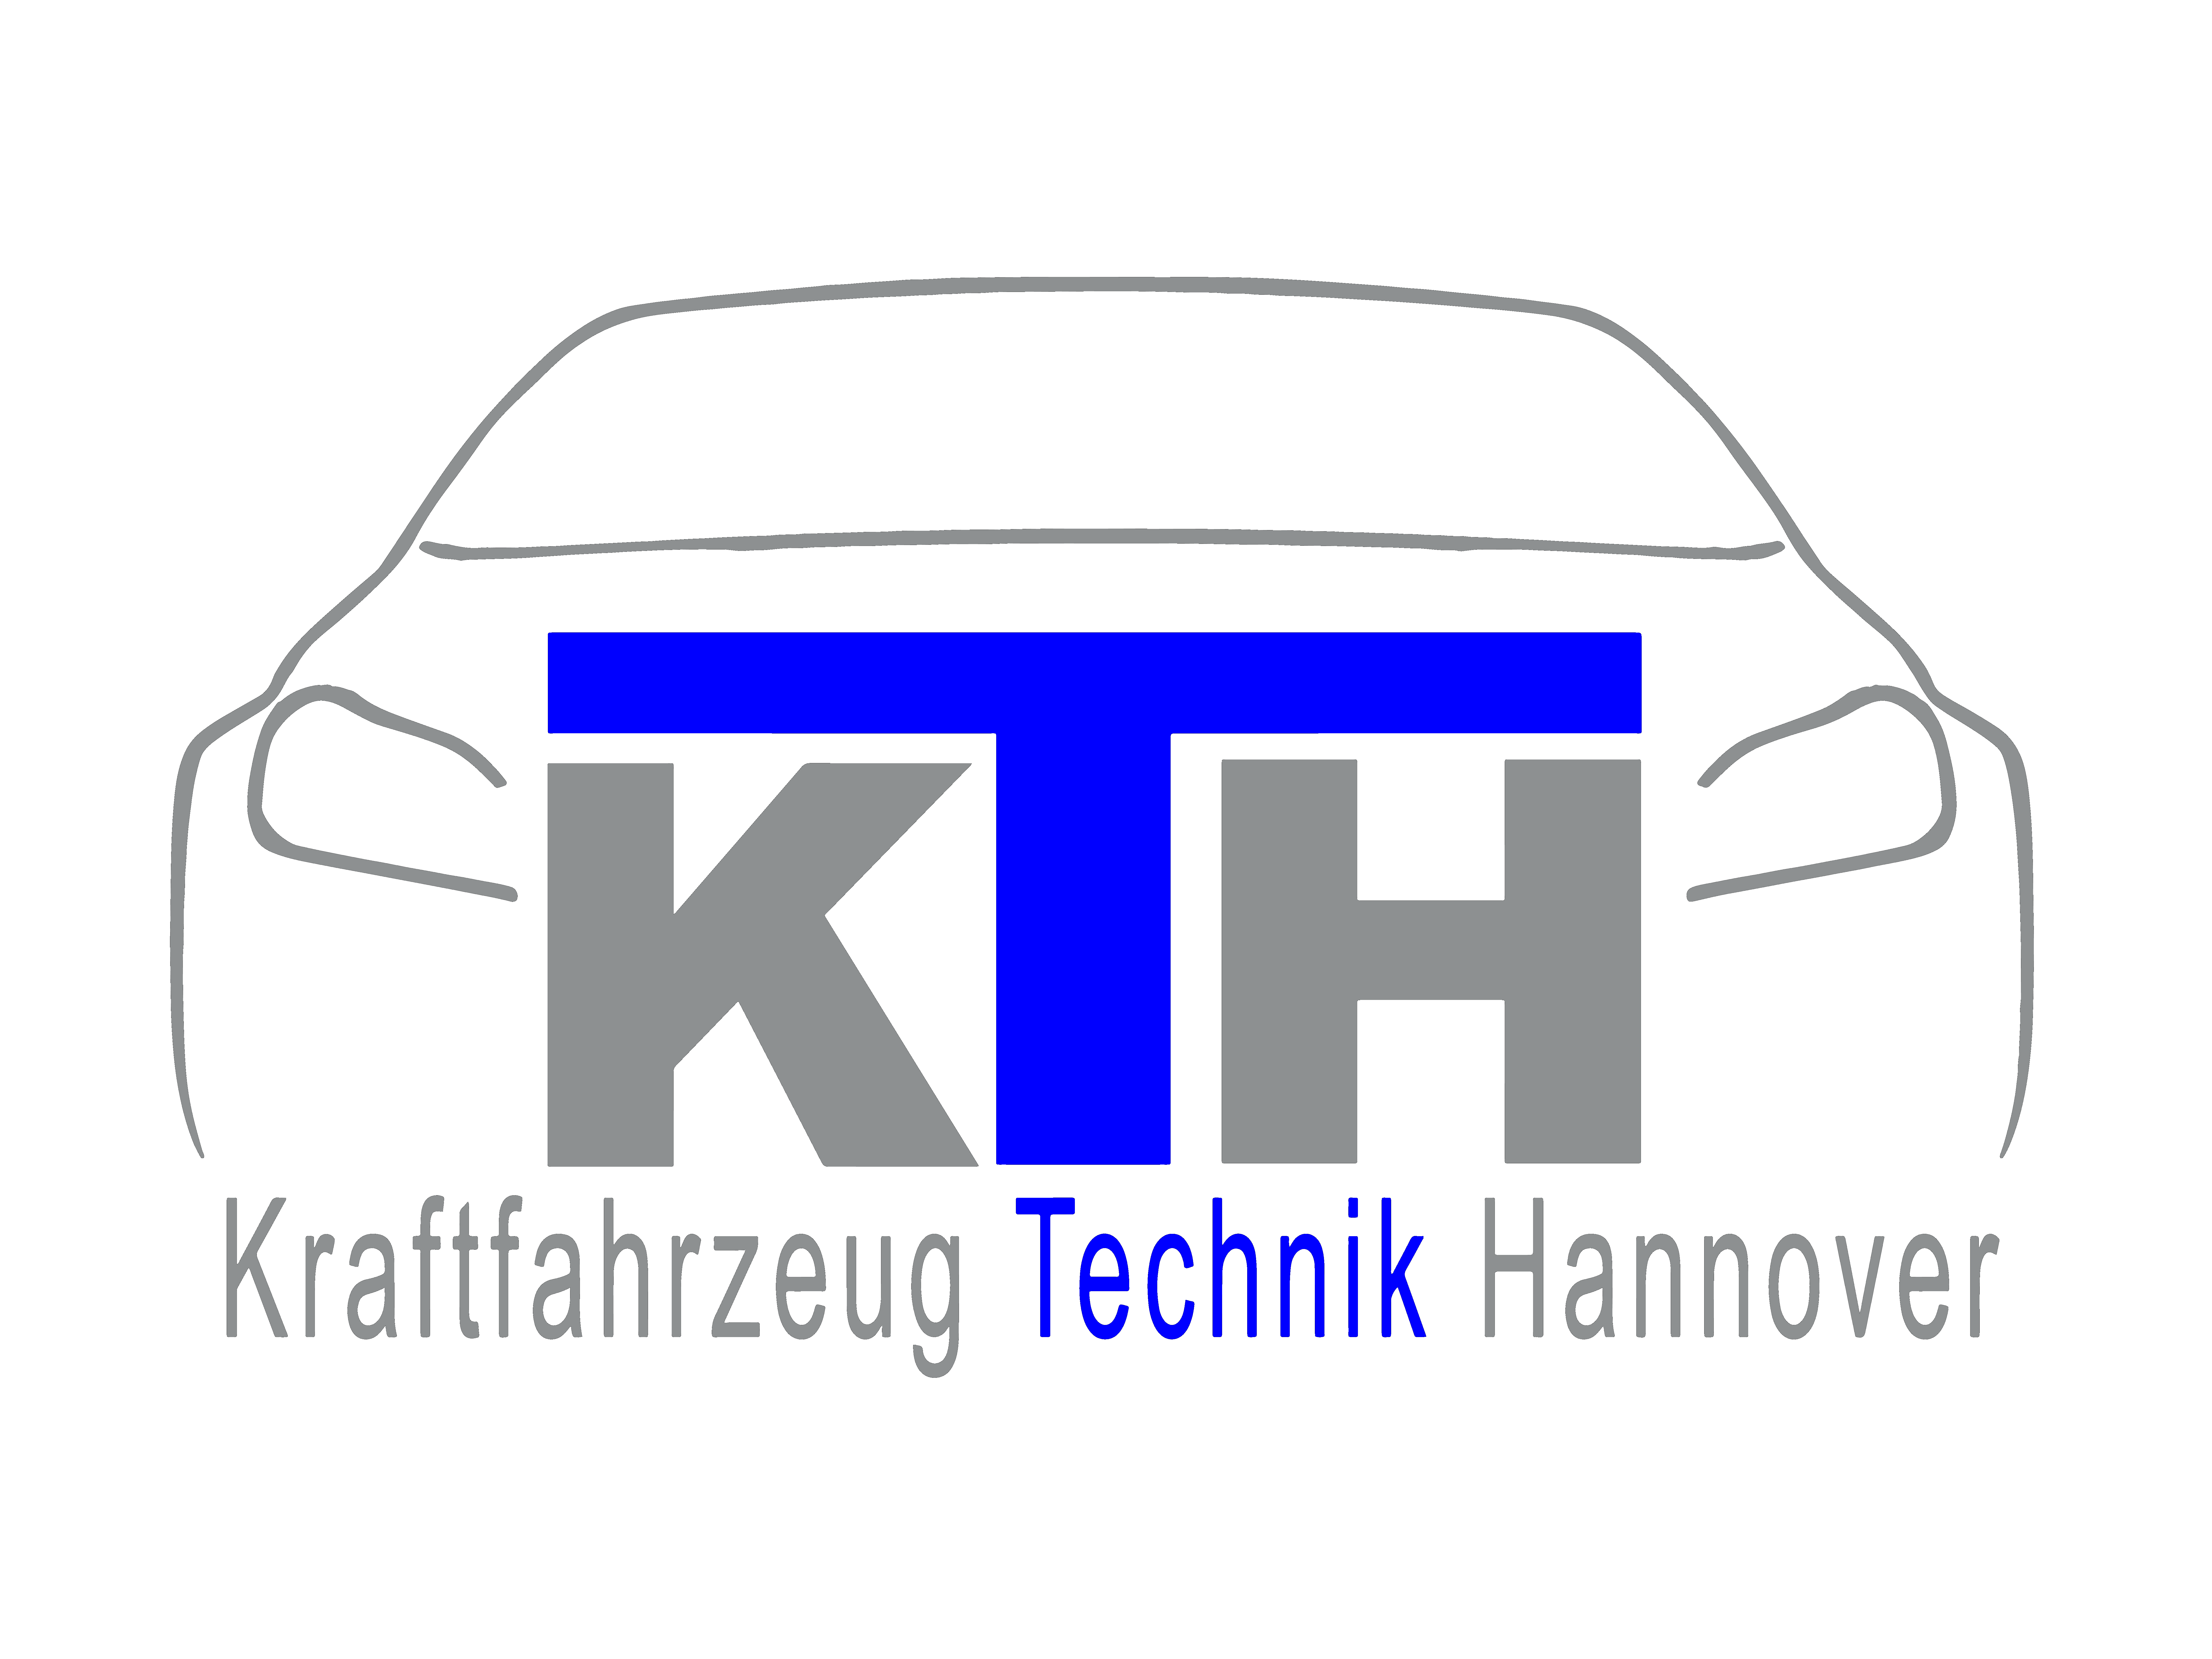 Kraftfahrzeugtechnik Hannover (KTH)